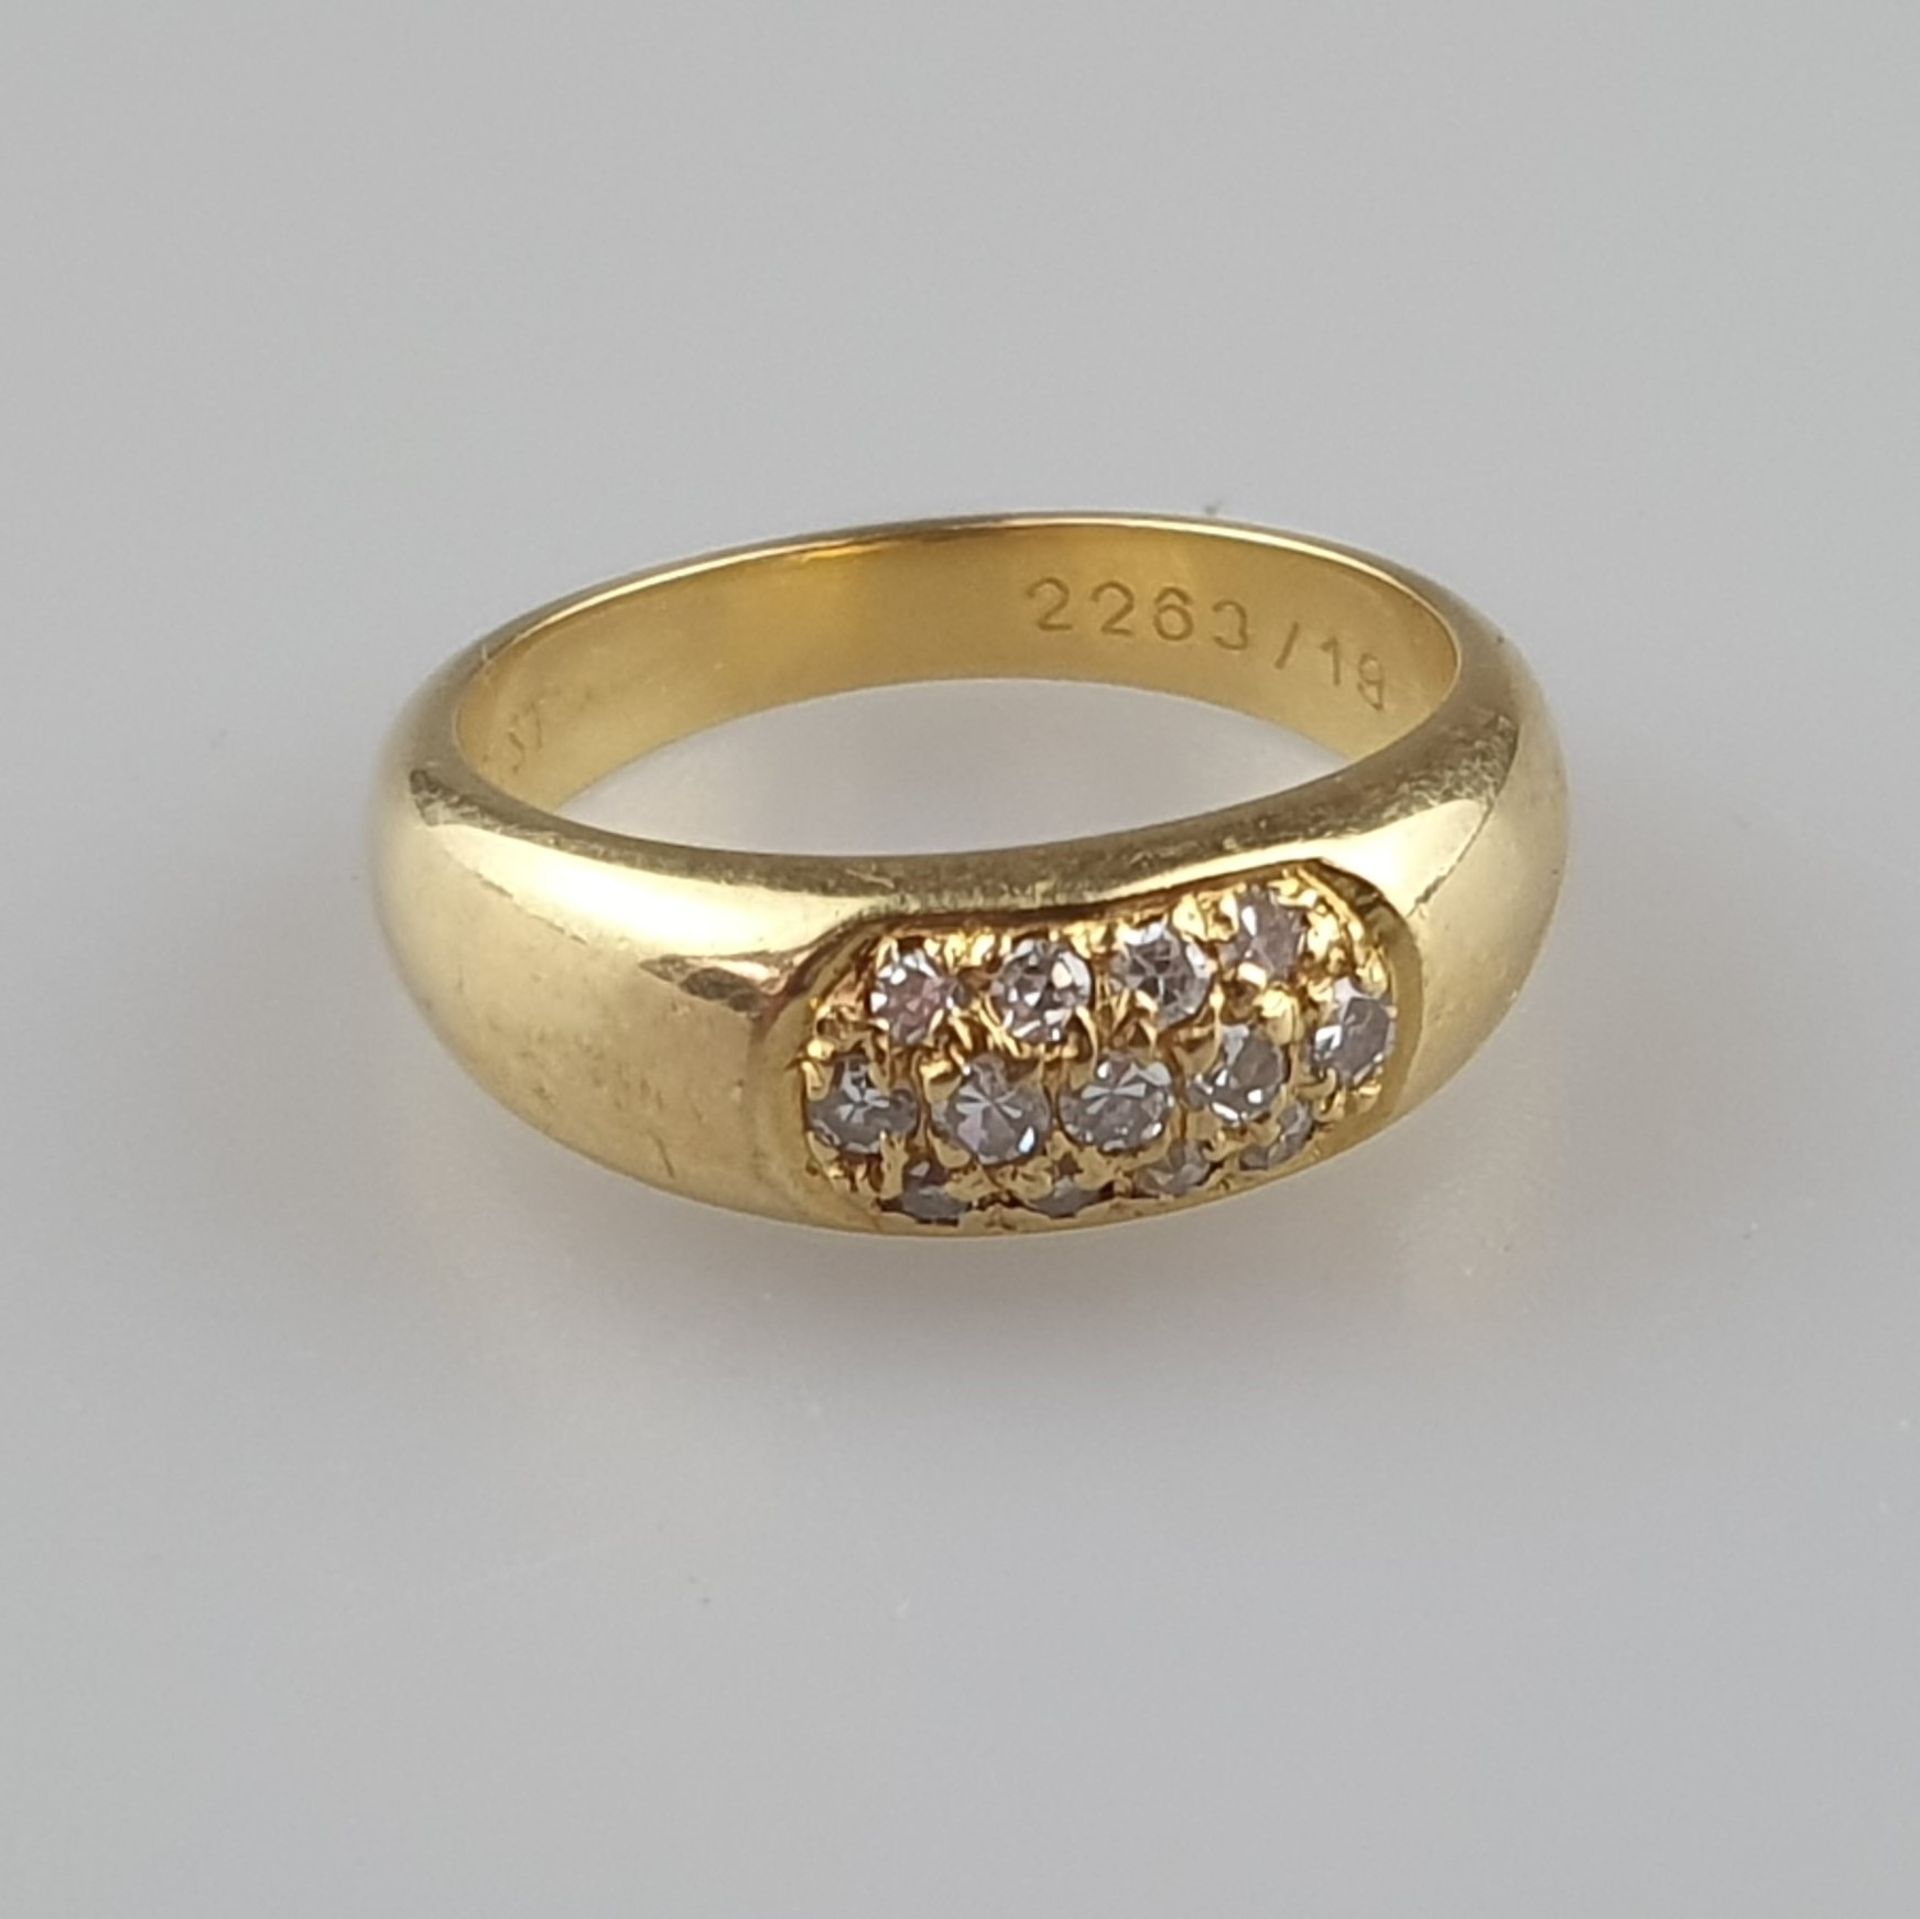 Goldring mit Diamantbesatz - Gelbgold 750/000 (18K), vertiefter Ringkopf ausgefasst mit 13 kleinen